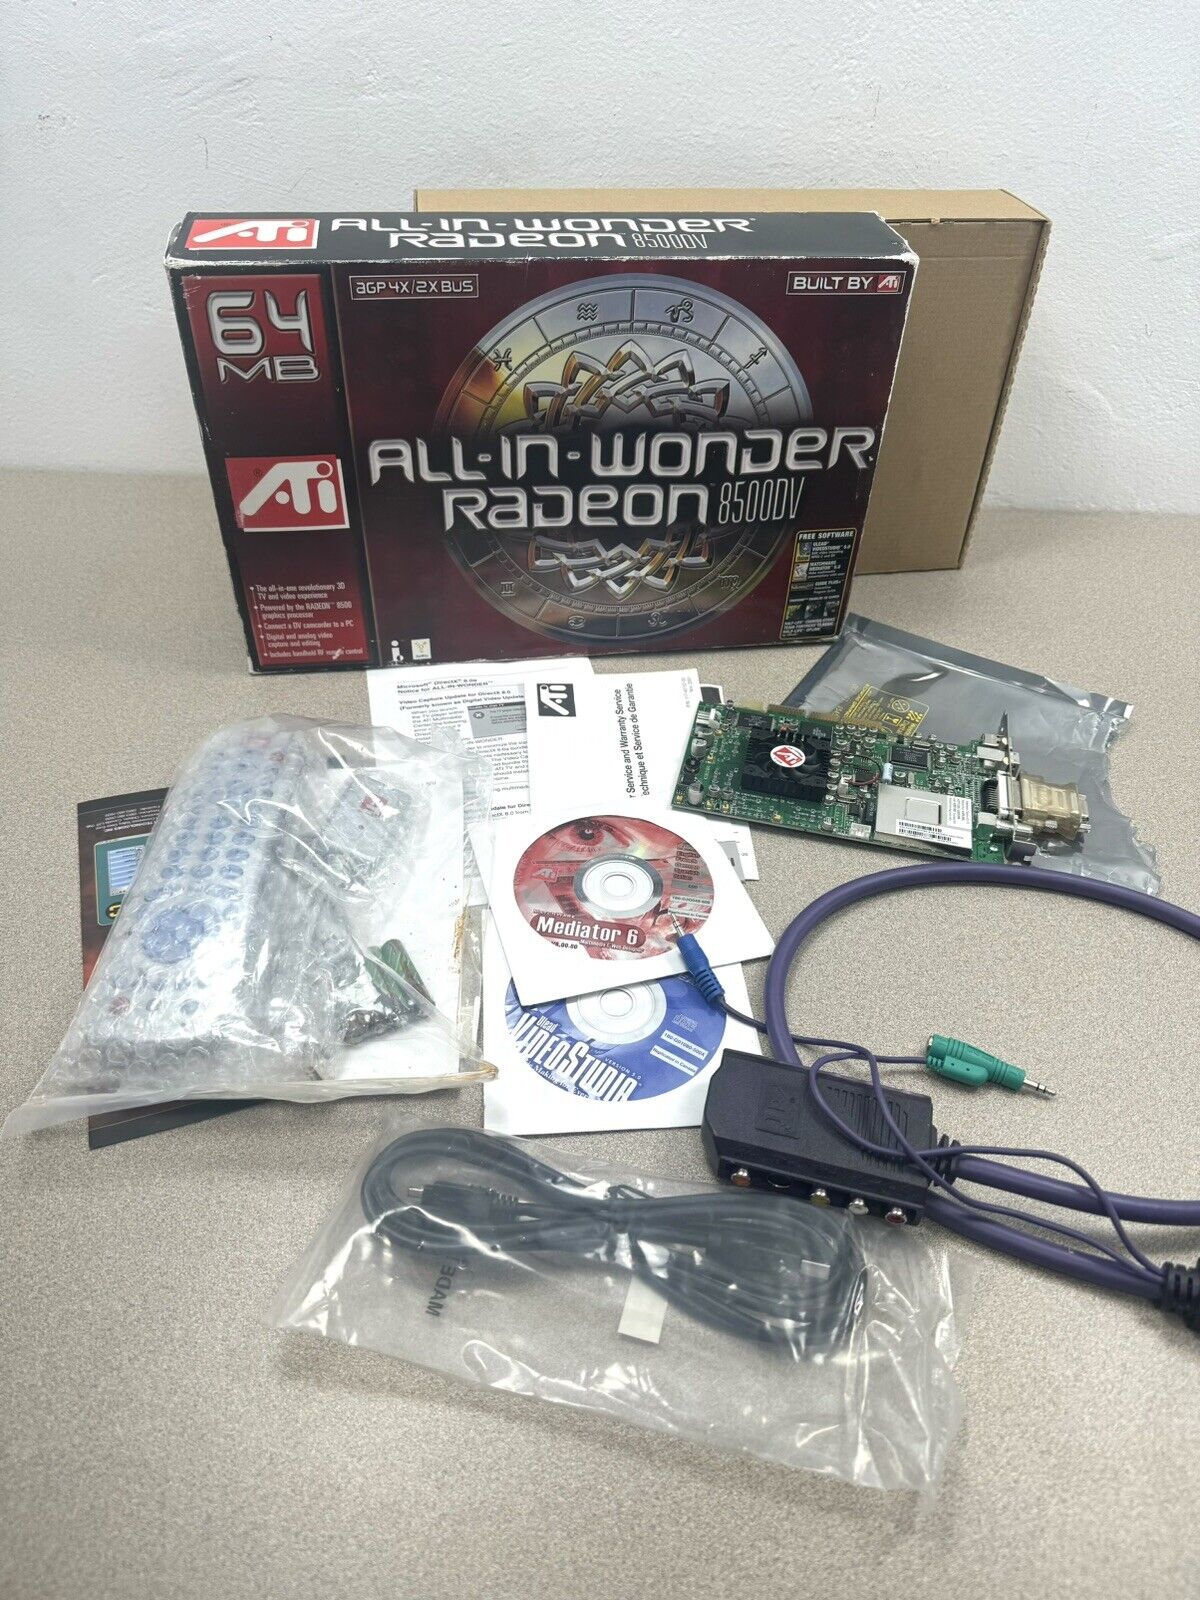 ATI ALL-IN-WONDER RADEON 8500DV 64Mb  Complete In Box